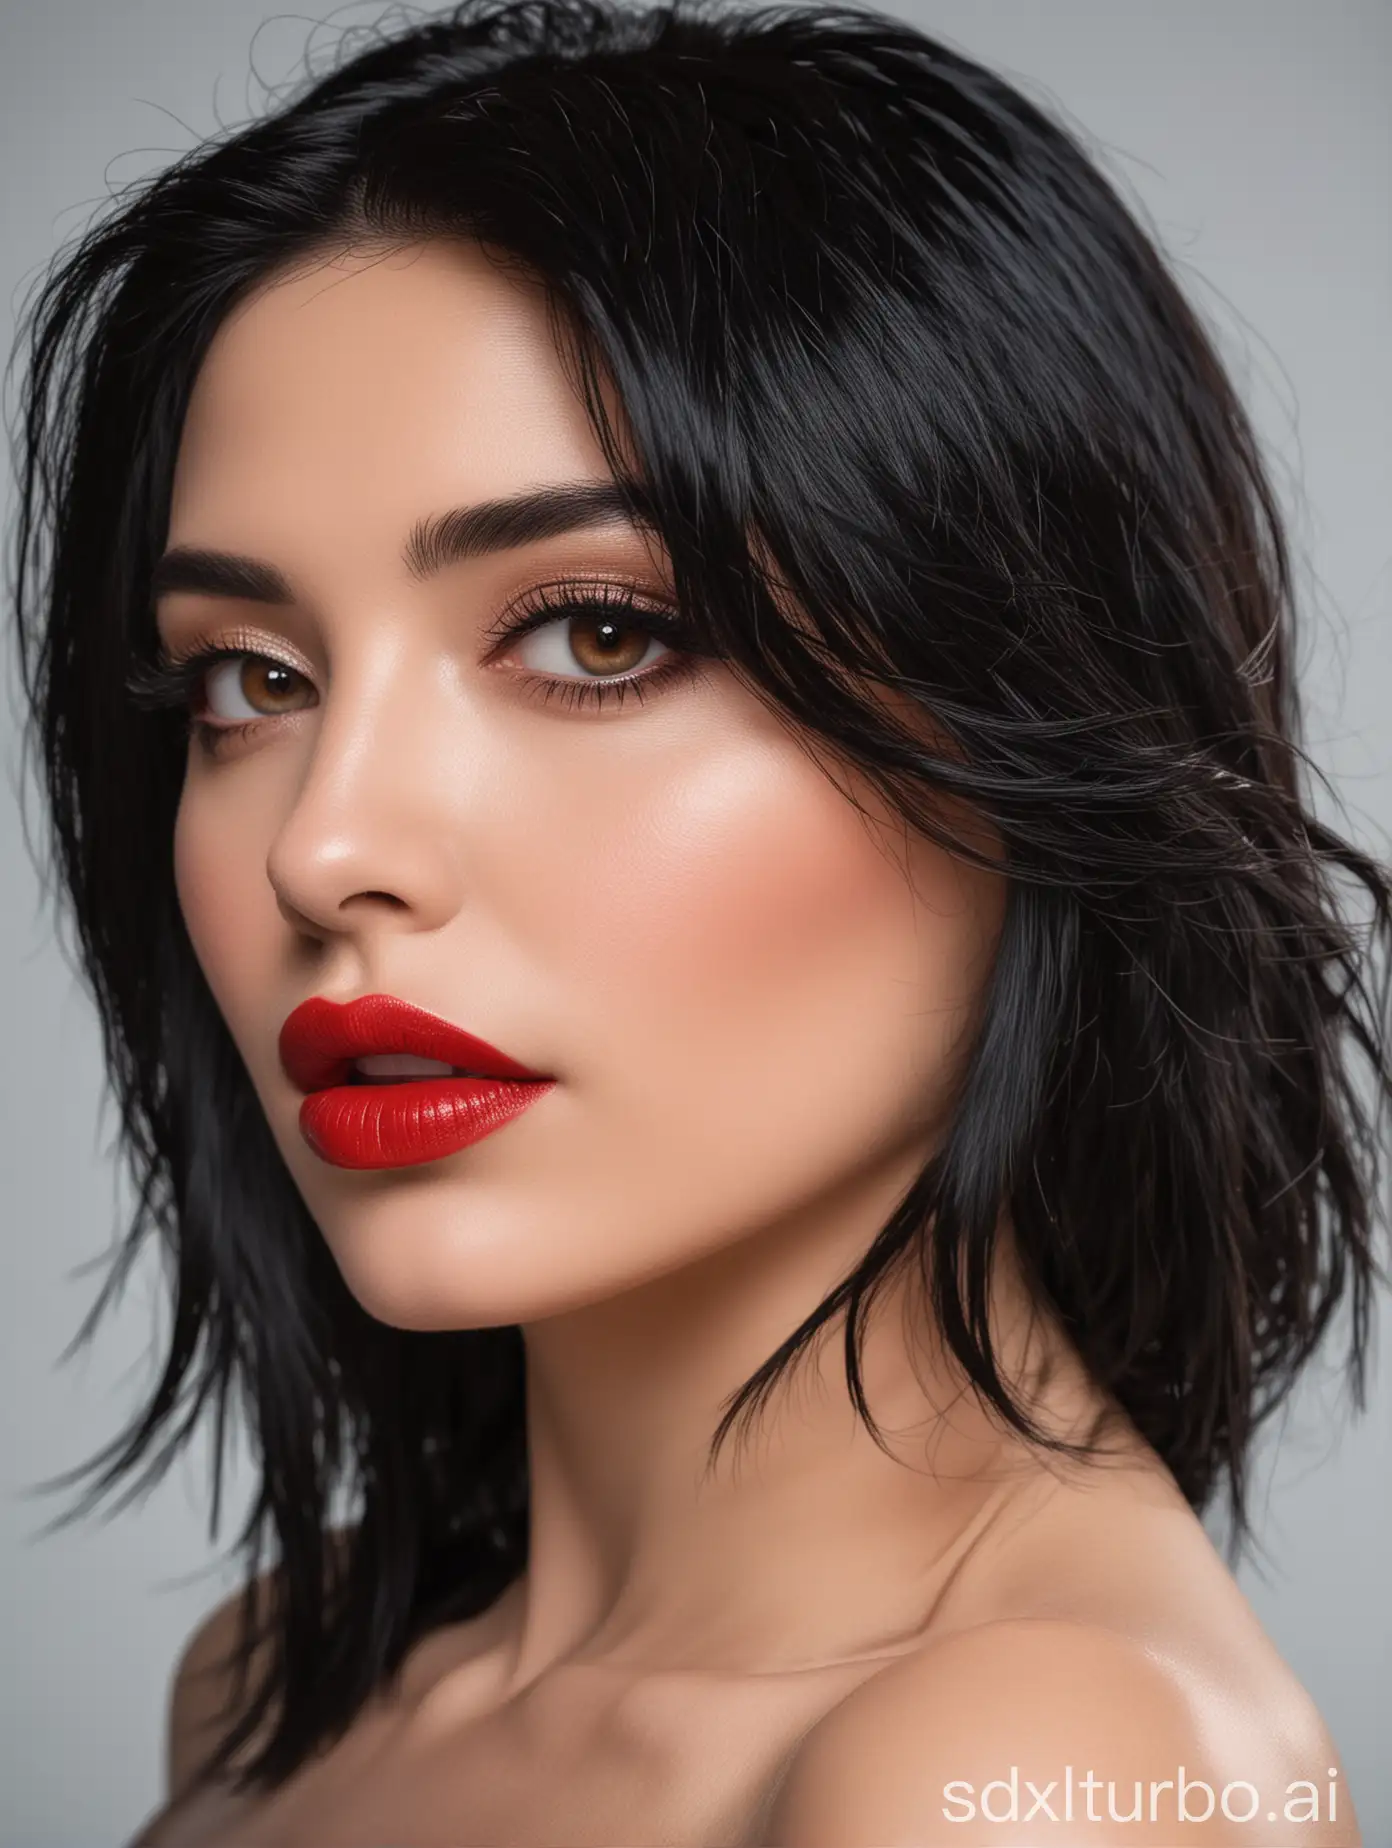 Seitliches Portrait einer schönenfrau mit schwarzem Haar ,roten Lippen und glühende Augen